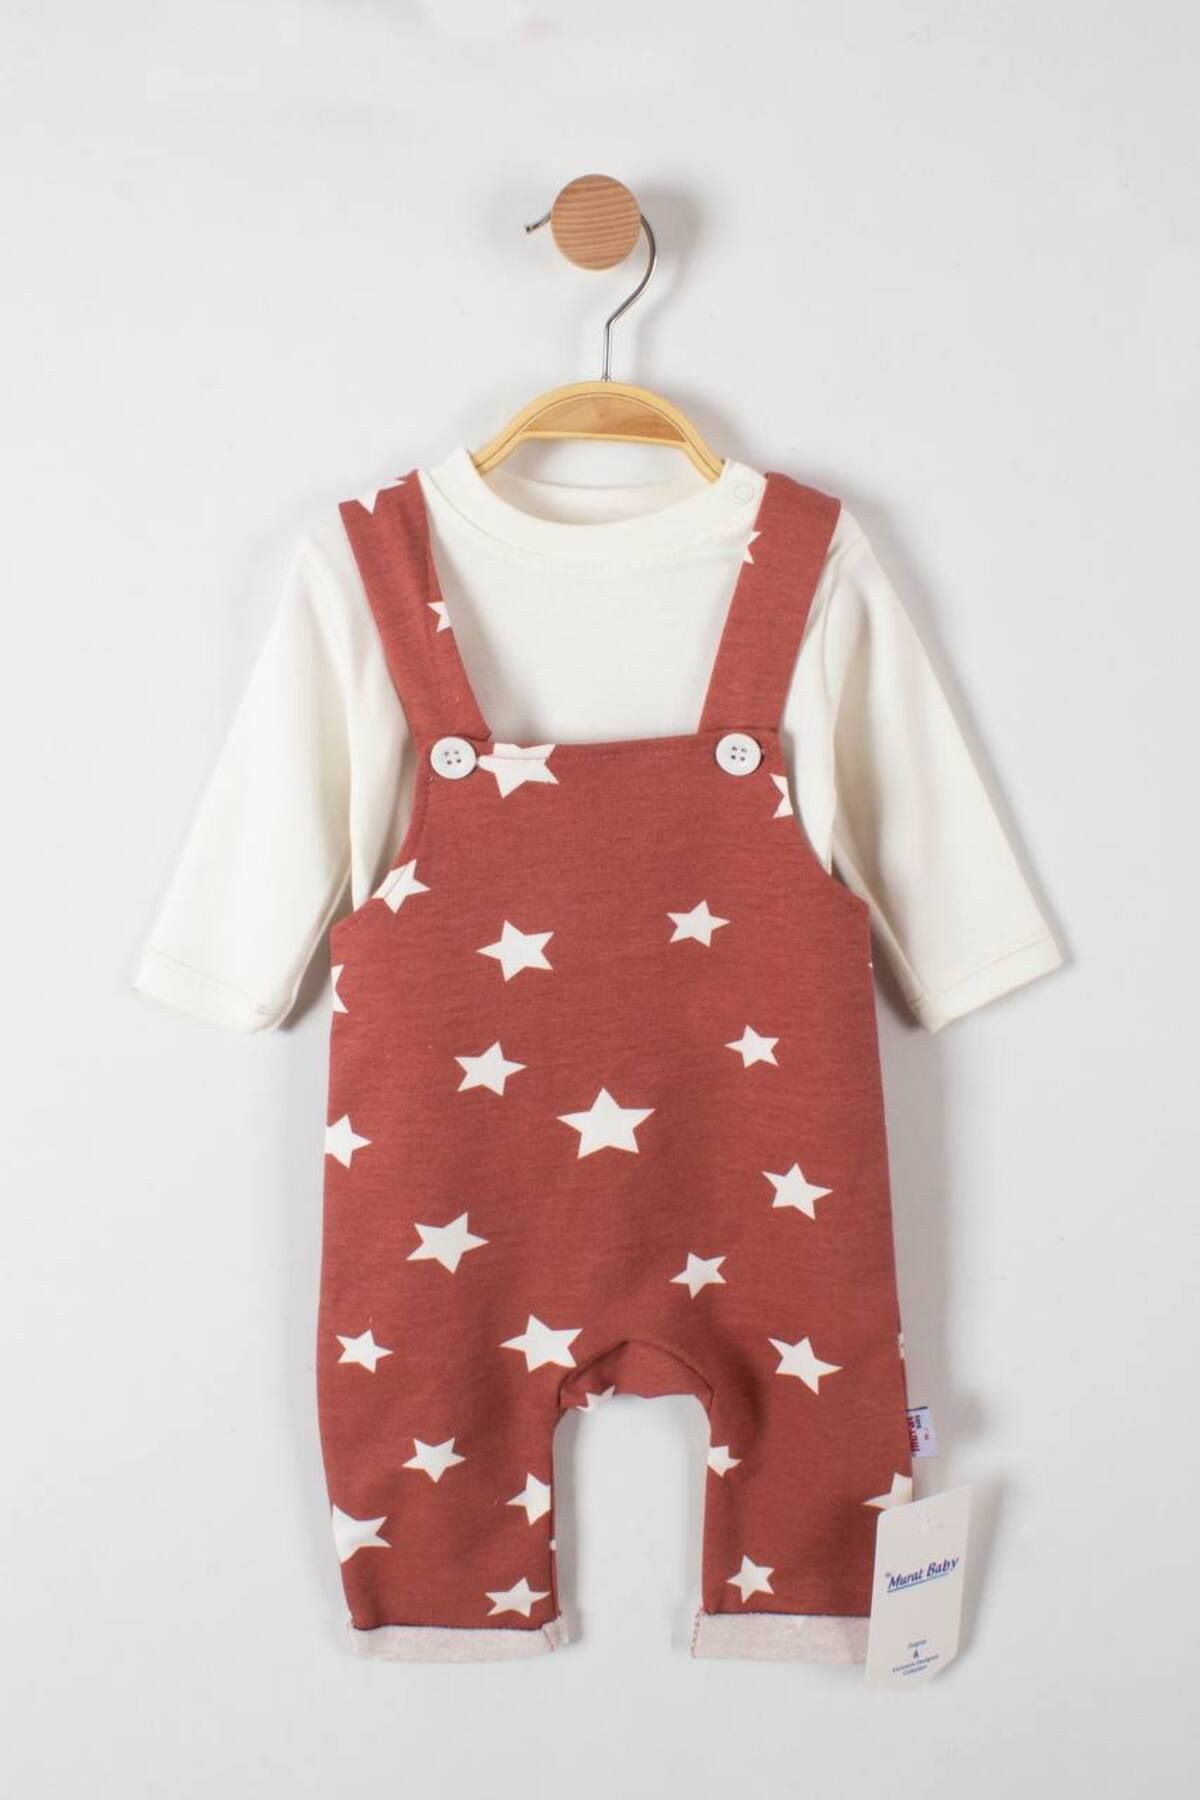 Murat Baby Yıldız Baskılı Bebek Tulum BYMK-8392 (Bir Büyük Bedeni Tercih Edebilirsiniz)